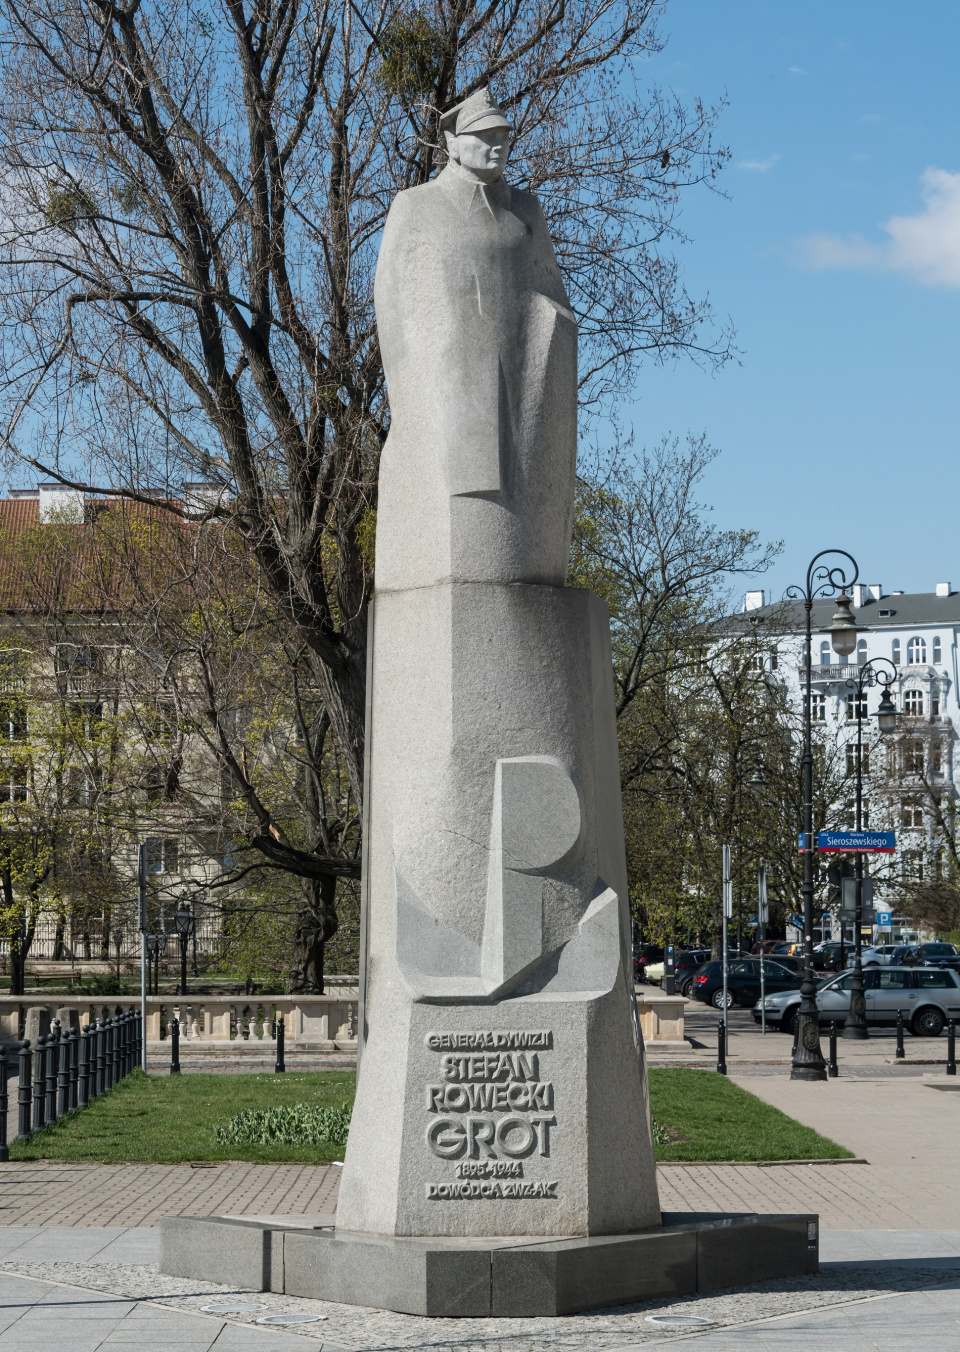 Pomnik Stefana Roweckiego Grota w Warszawie 2022 [fot: Adrian Grycuk/CC BY-SA 3.0-pl/Wikimedia Commons.]